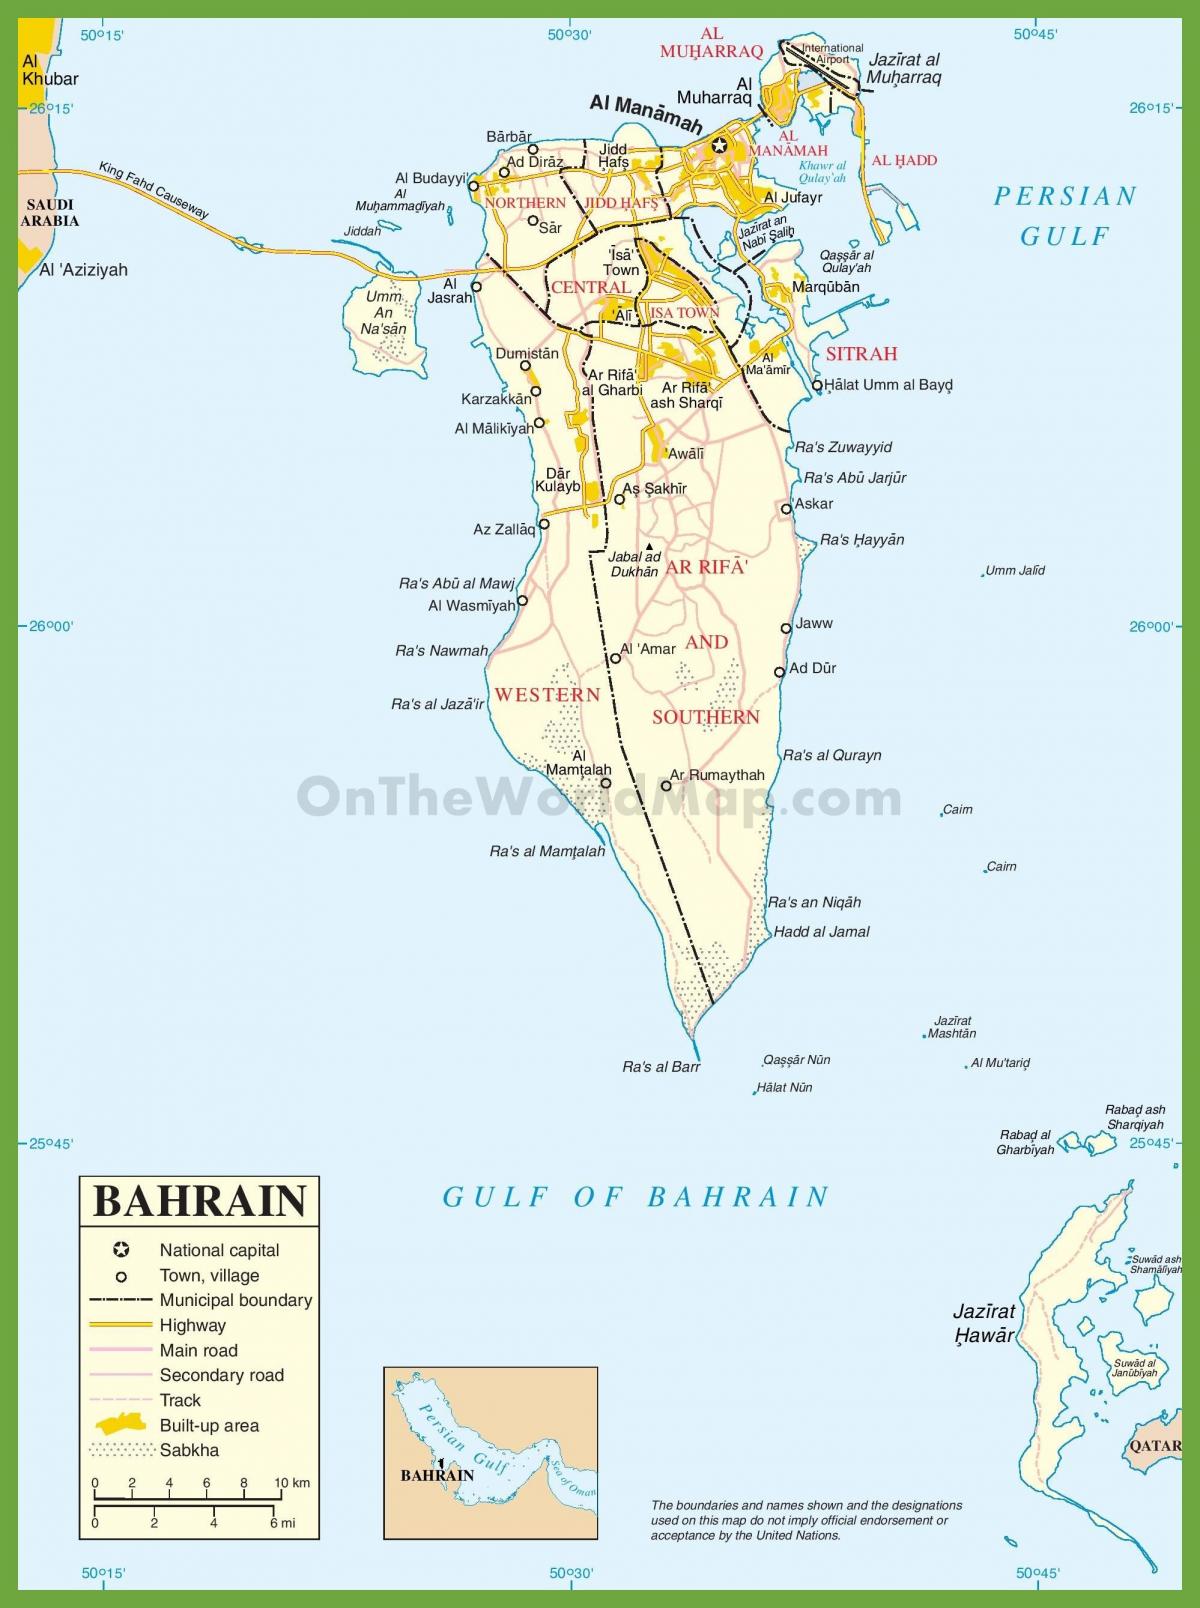 Bahrain bandar-bandar peta